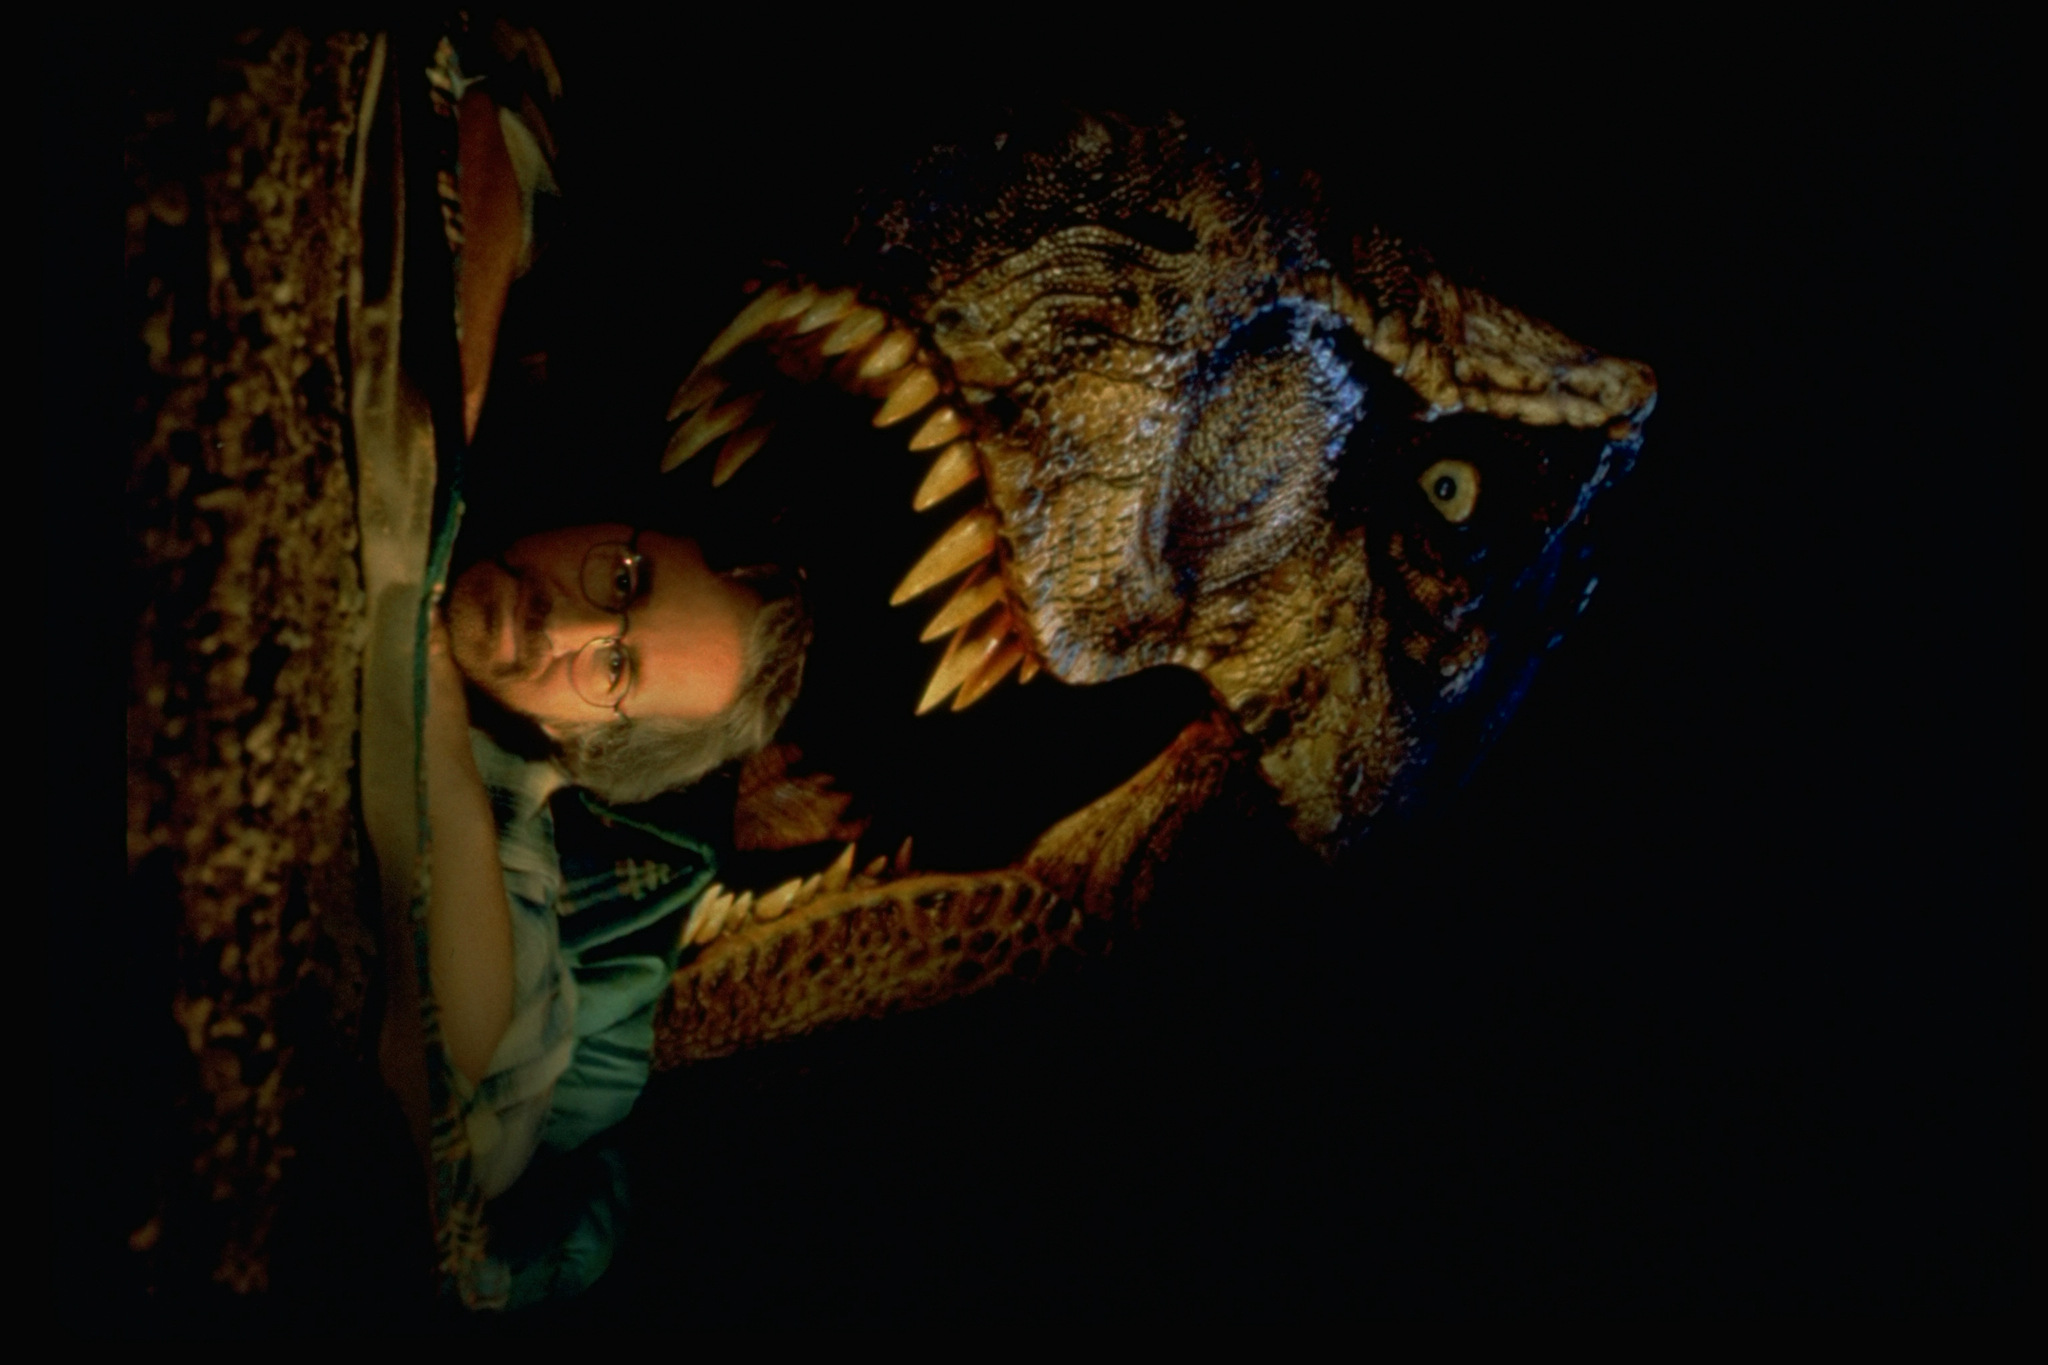 Still of Steven Spielberg in The Lost World: Jurassic Park (1997)